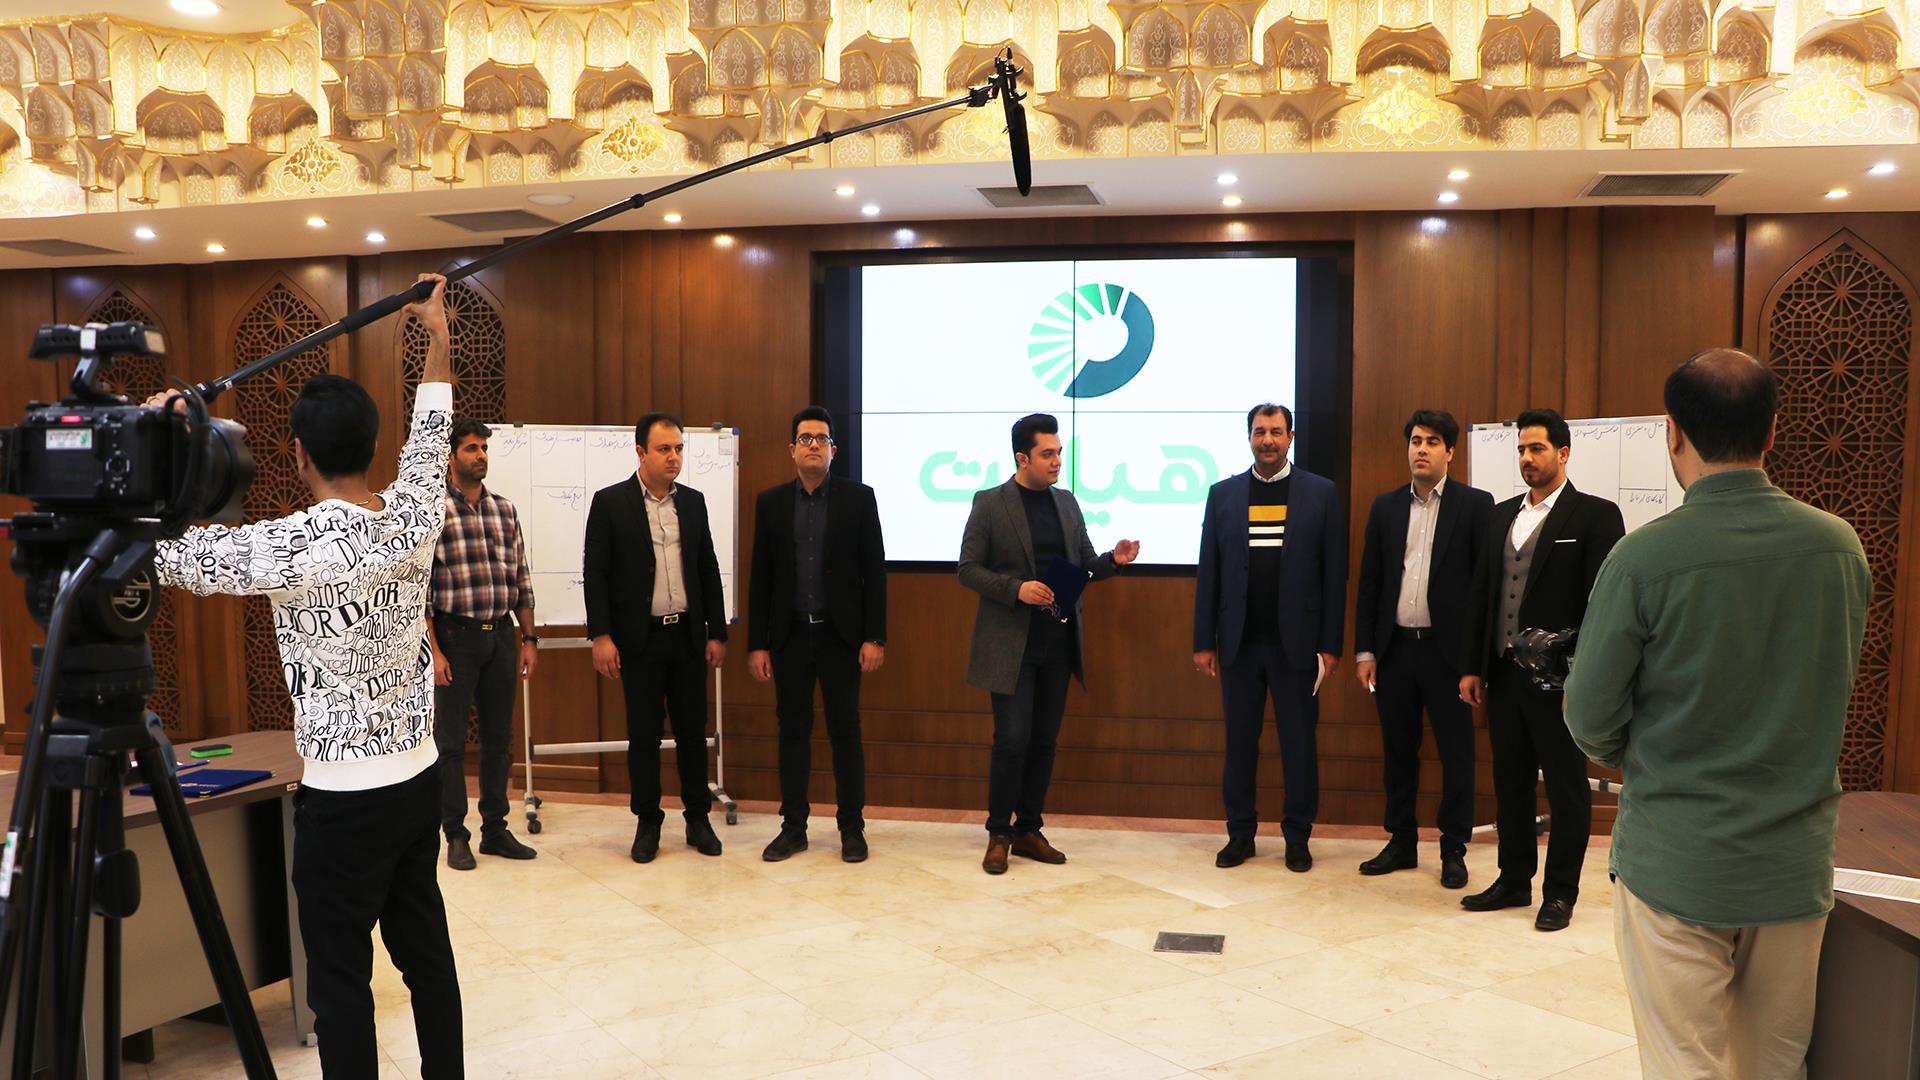 تولید سری جدید برنامه تلویزیونی رهیافت در اتاق بازرگانی اصفهان